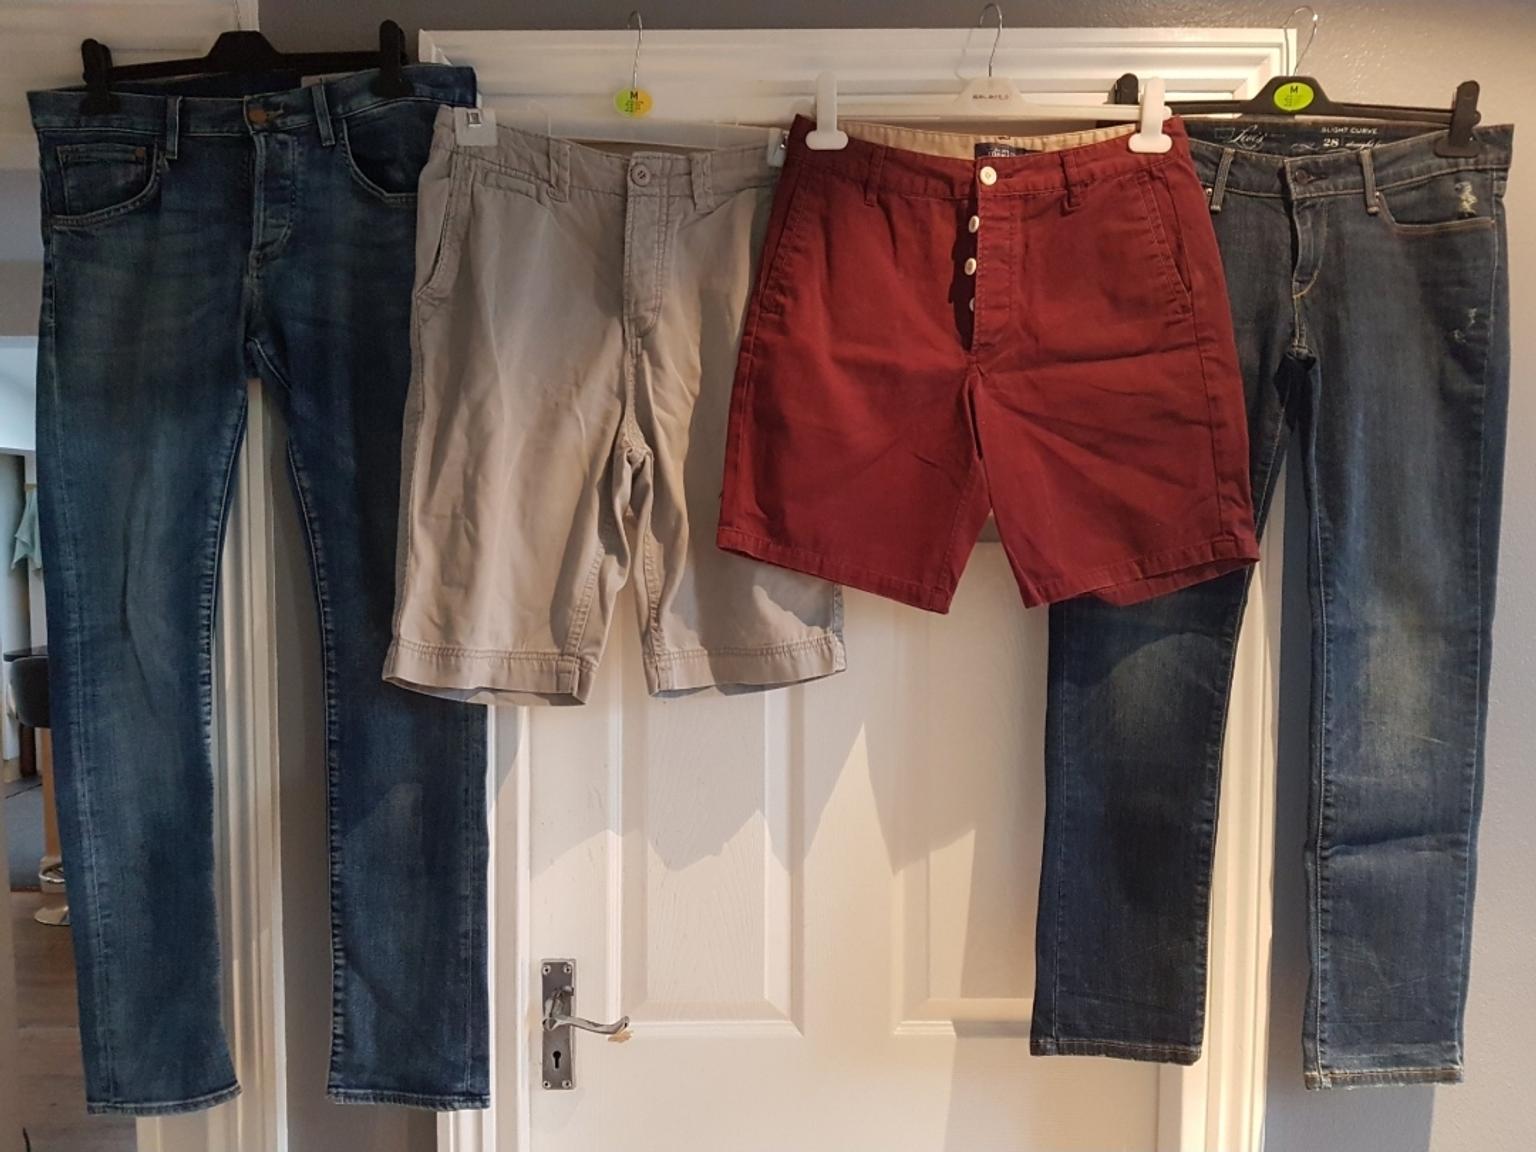 levis jeans 28 x 30